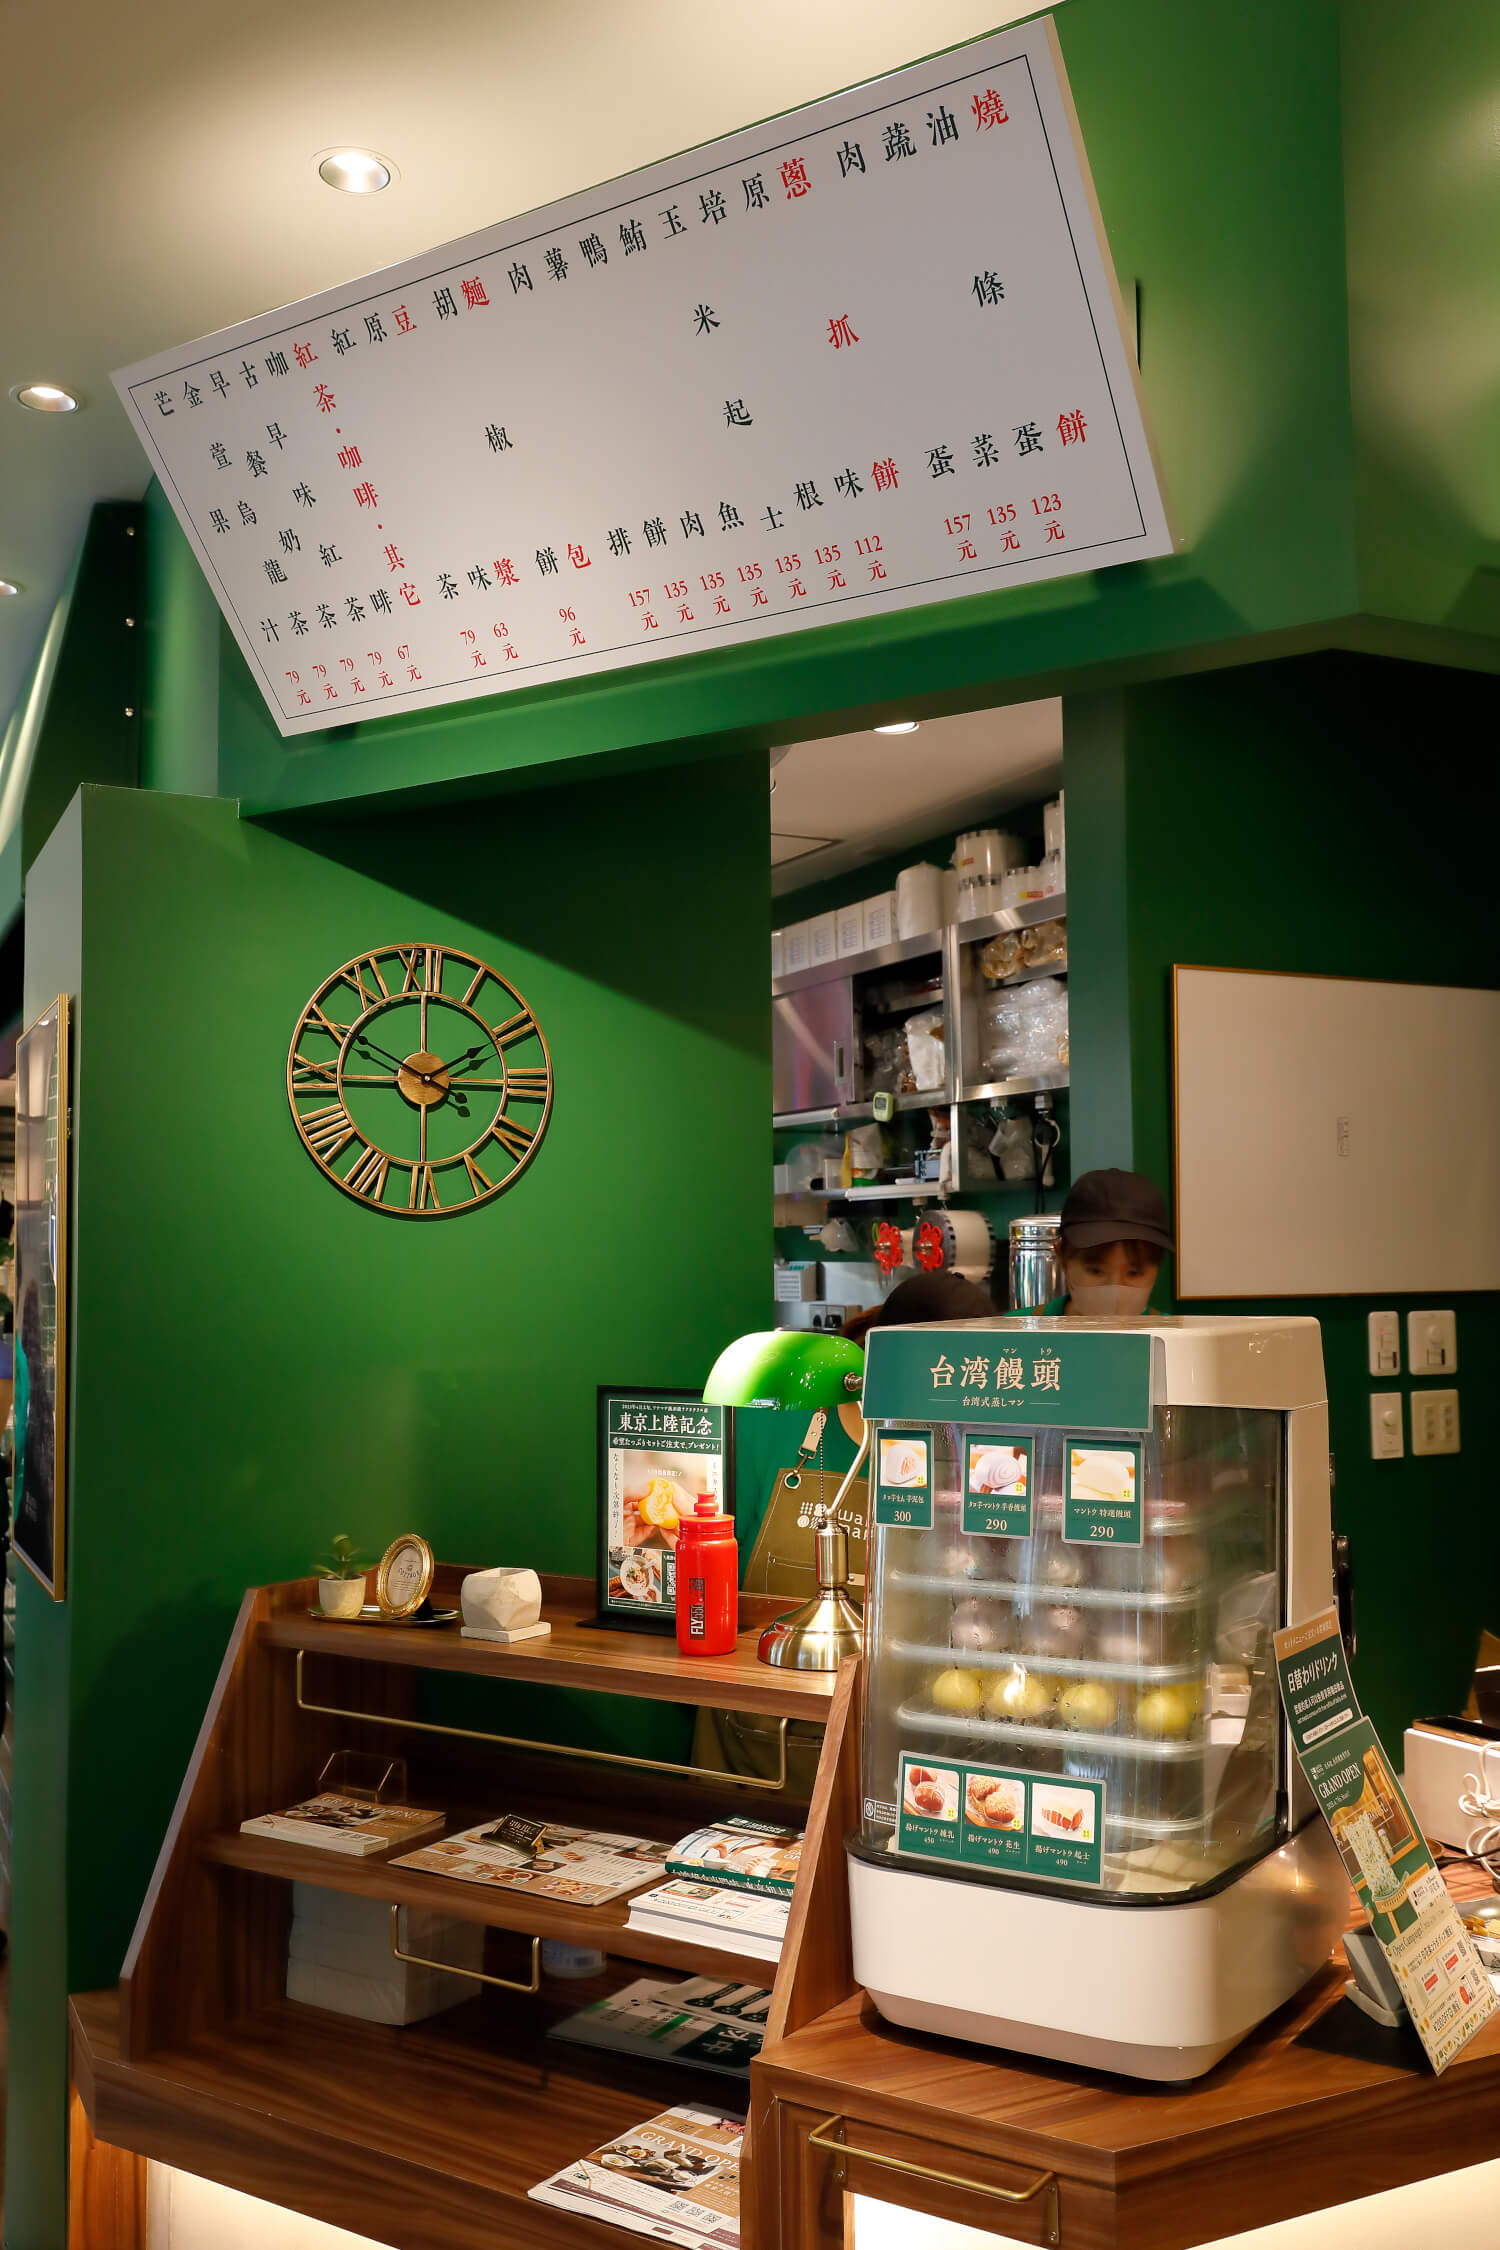 タロ芋まんほか、すぐテイクアウトできる品も準備。大阪店で人気の台湾風パン類各種も秋口には棚に並ぶ予定で期待。